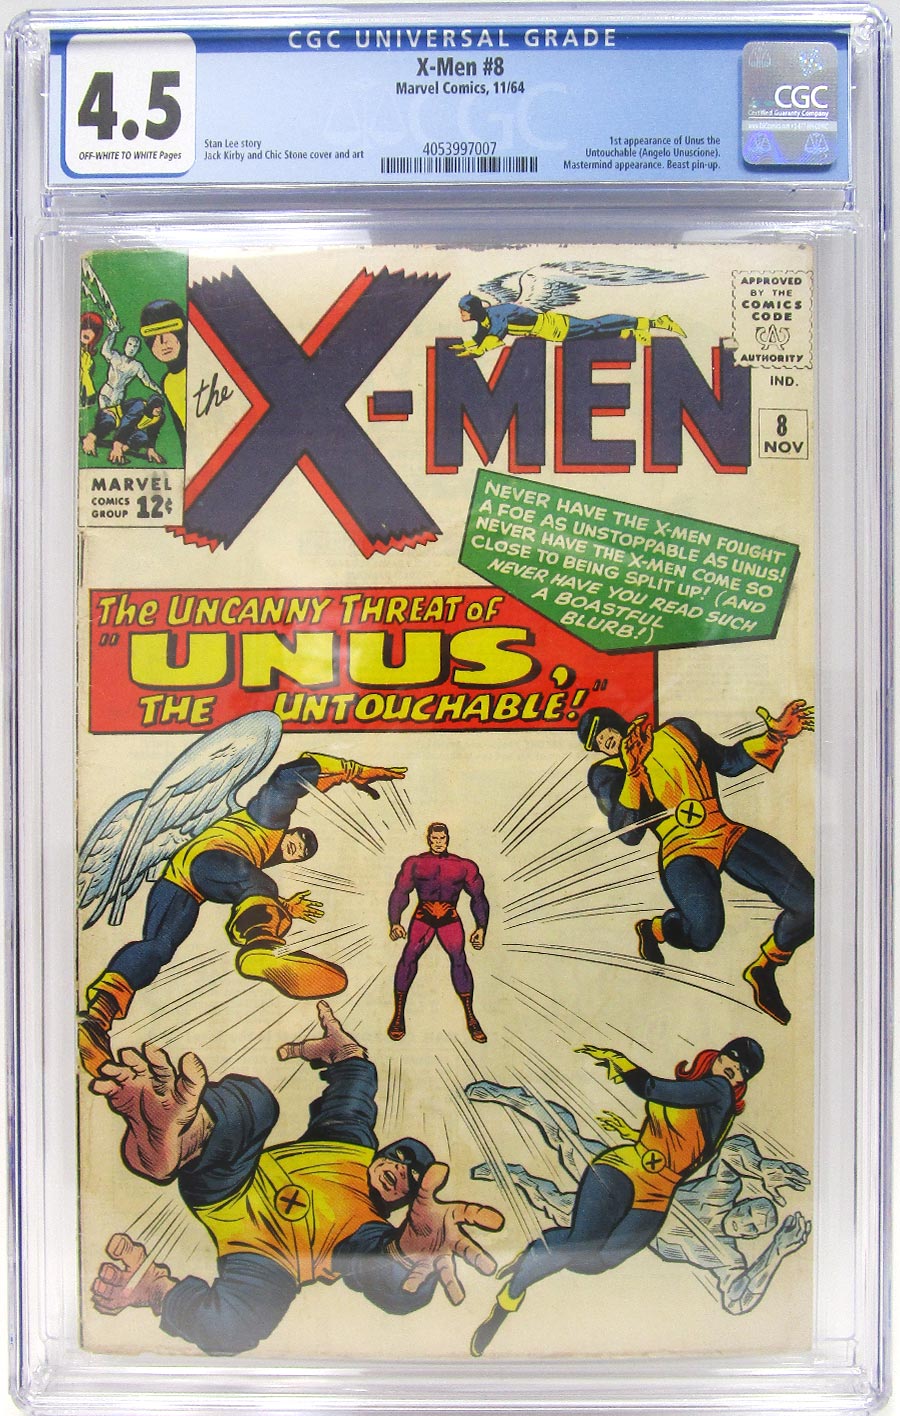 X-Men Vol 1 #8 Cover C CGC 4.5